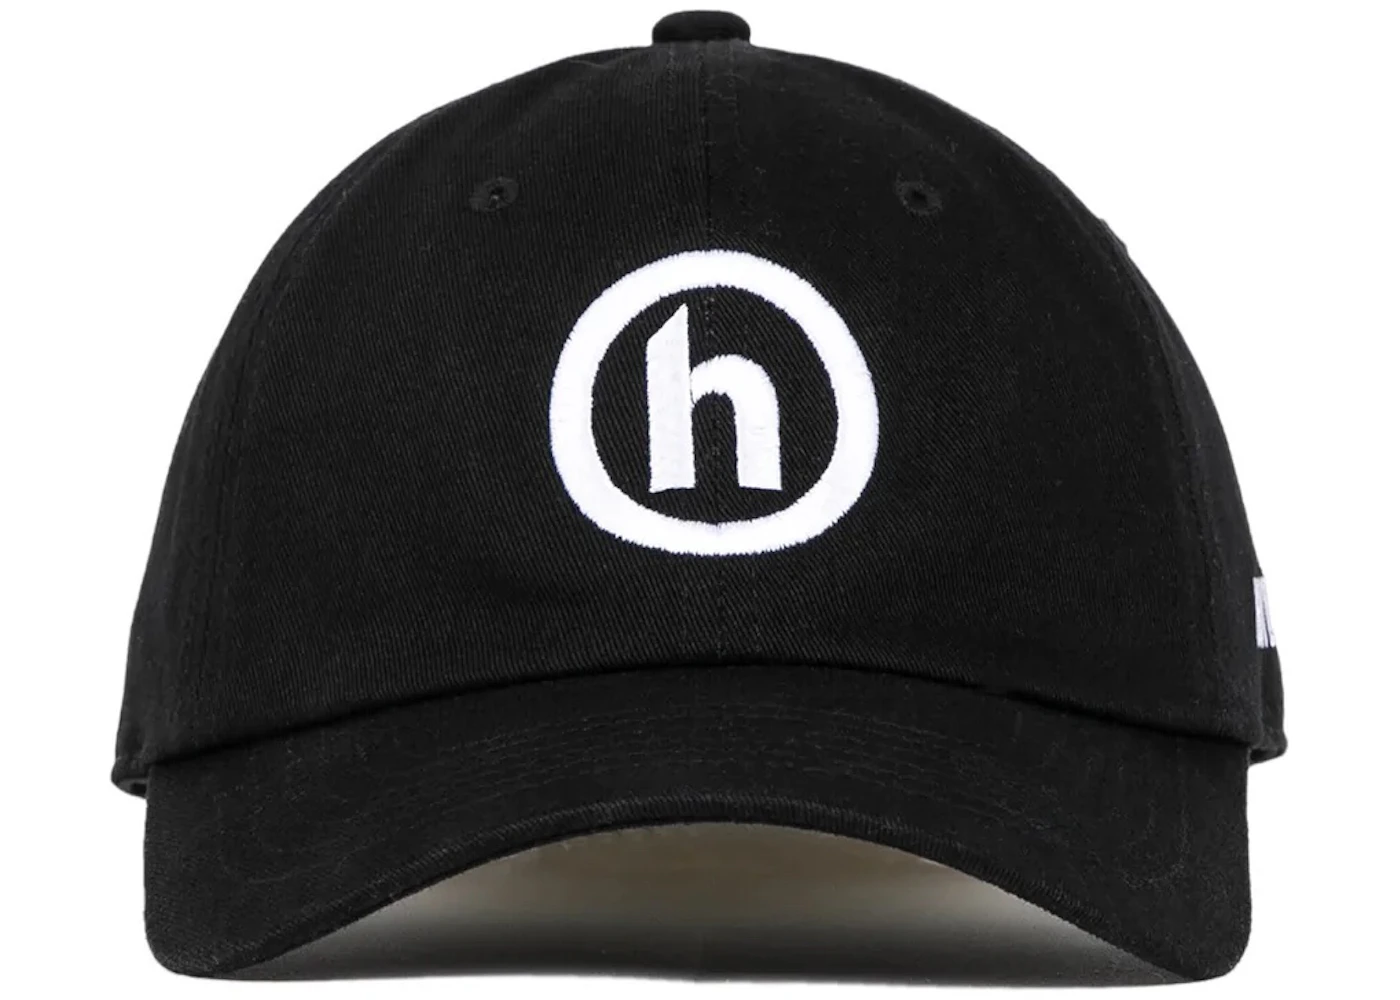 Hidden NY Logo Hat Black Men's - FW22 - US